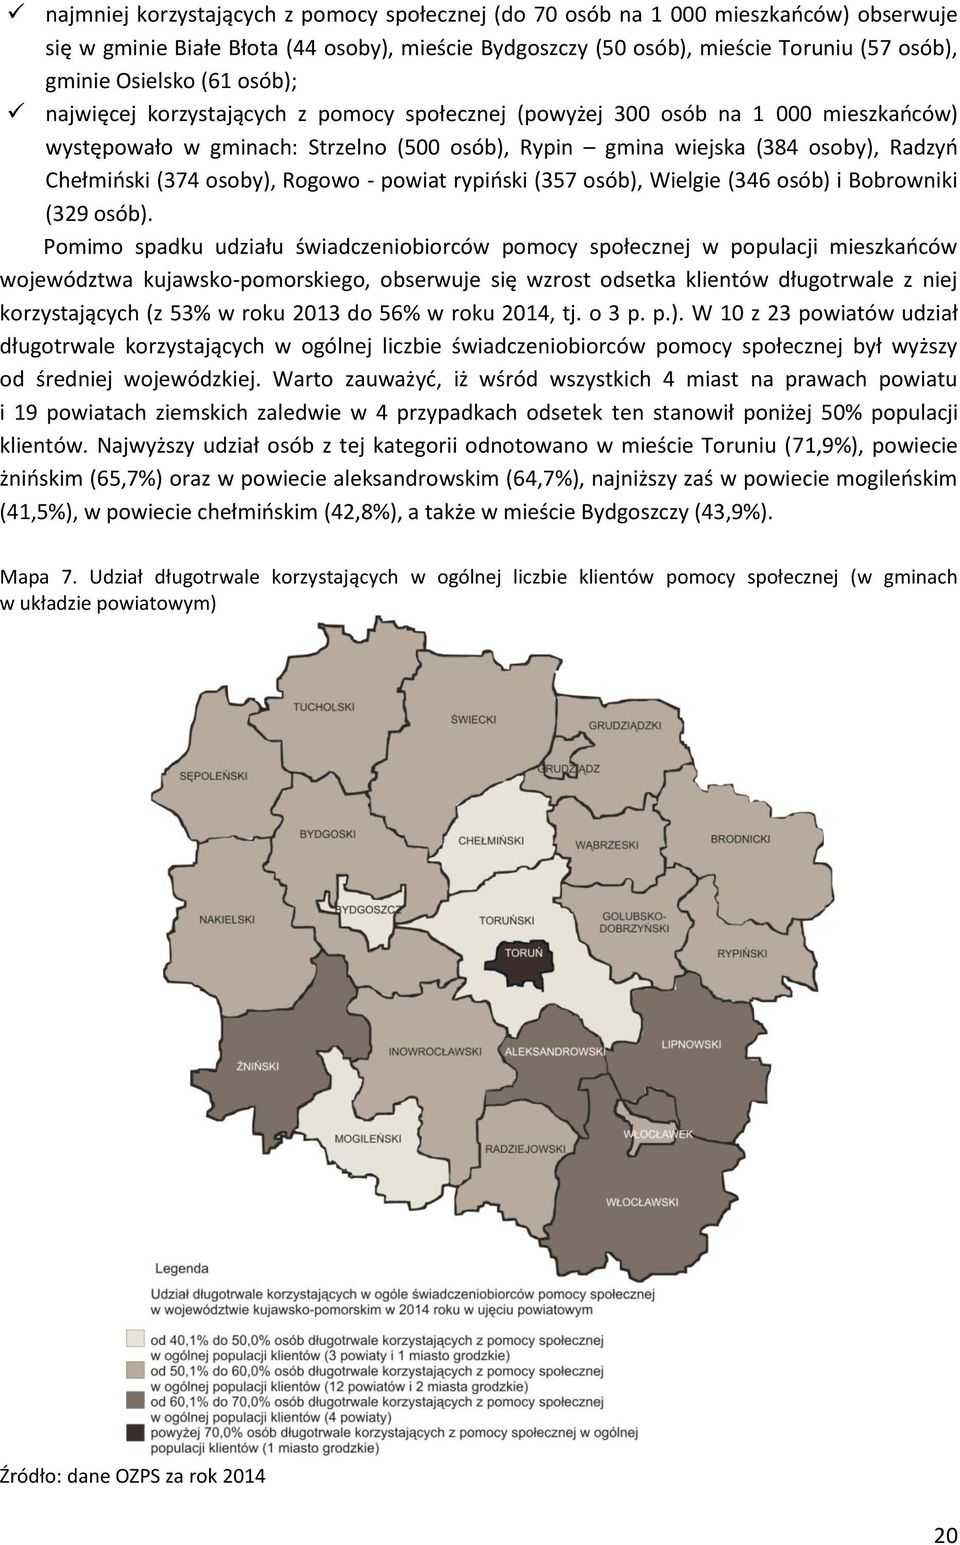 osoby), Rogowo - powiat rypiński (357 osób), Wielgie (346 osób) i Bobrowniki (329 osób).